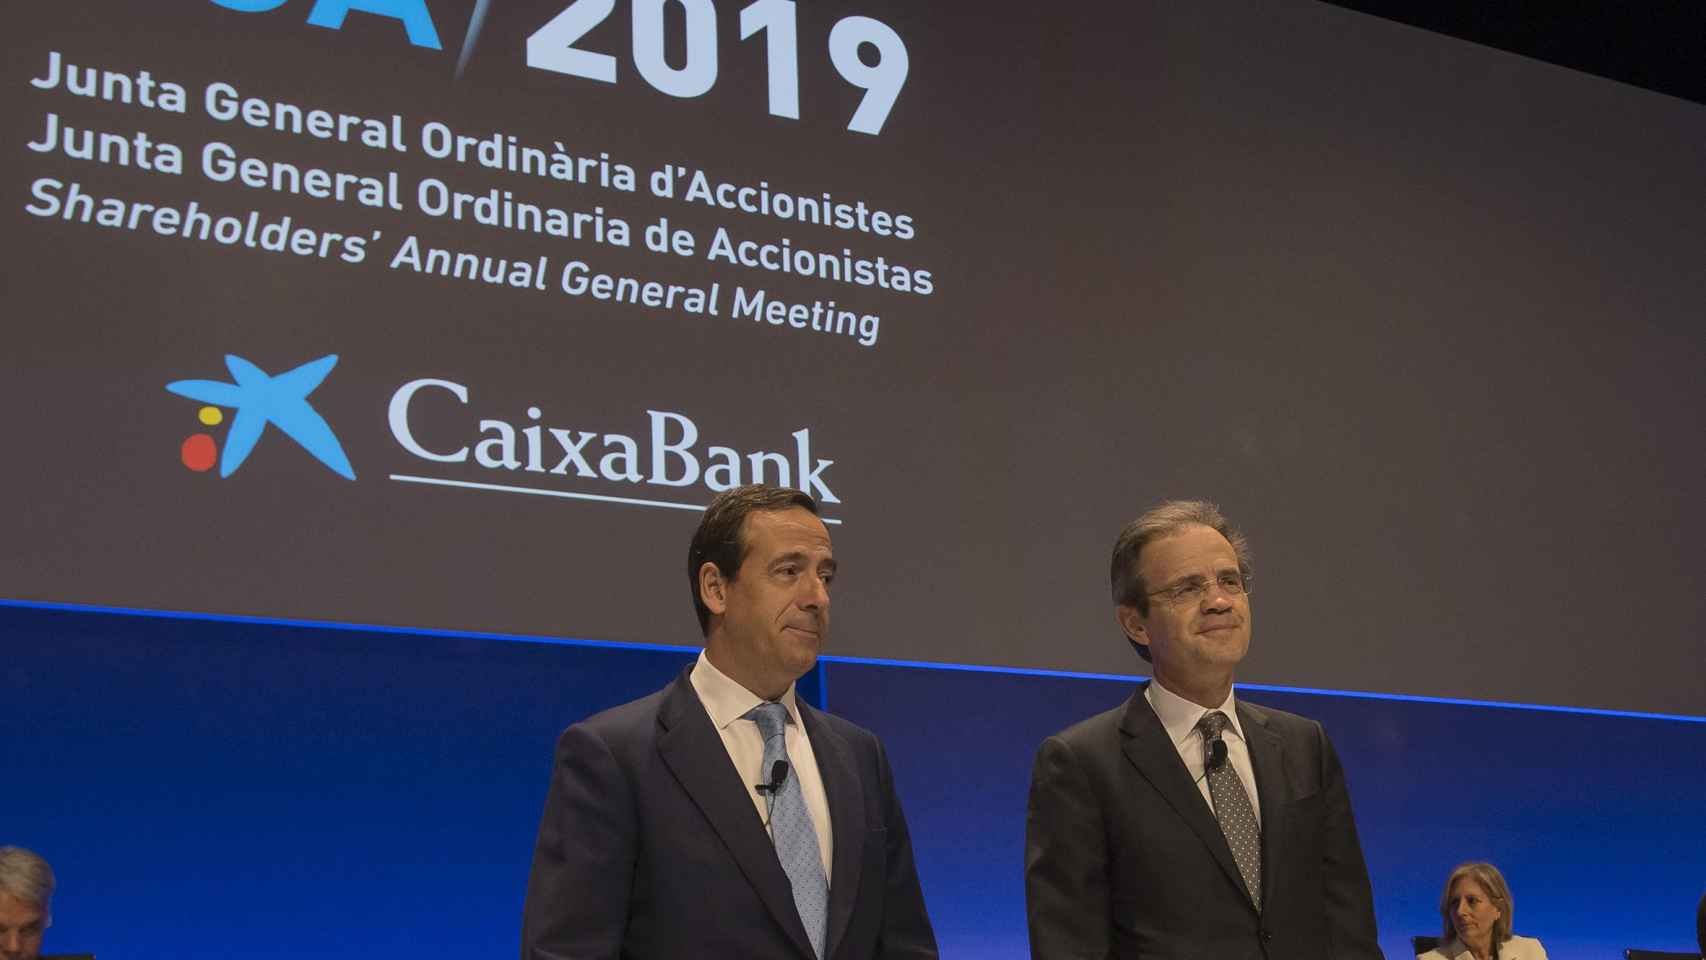 Junta de Accionistas de Caixabank con su presidente Jordi Gual y su consejero delegado, Gonzalo Gortázar / CG